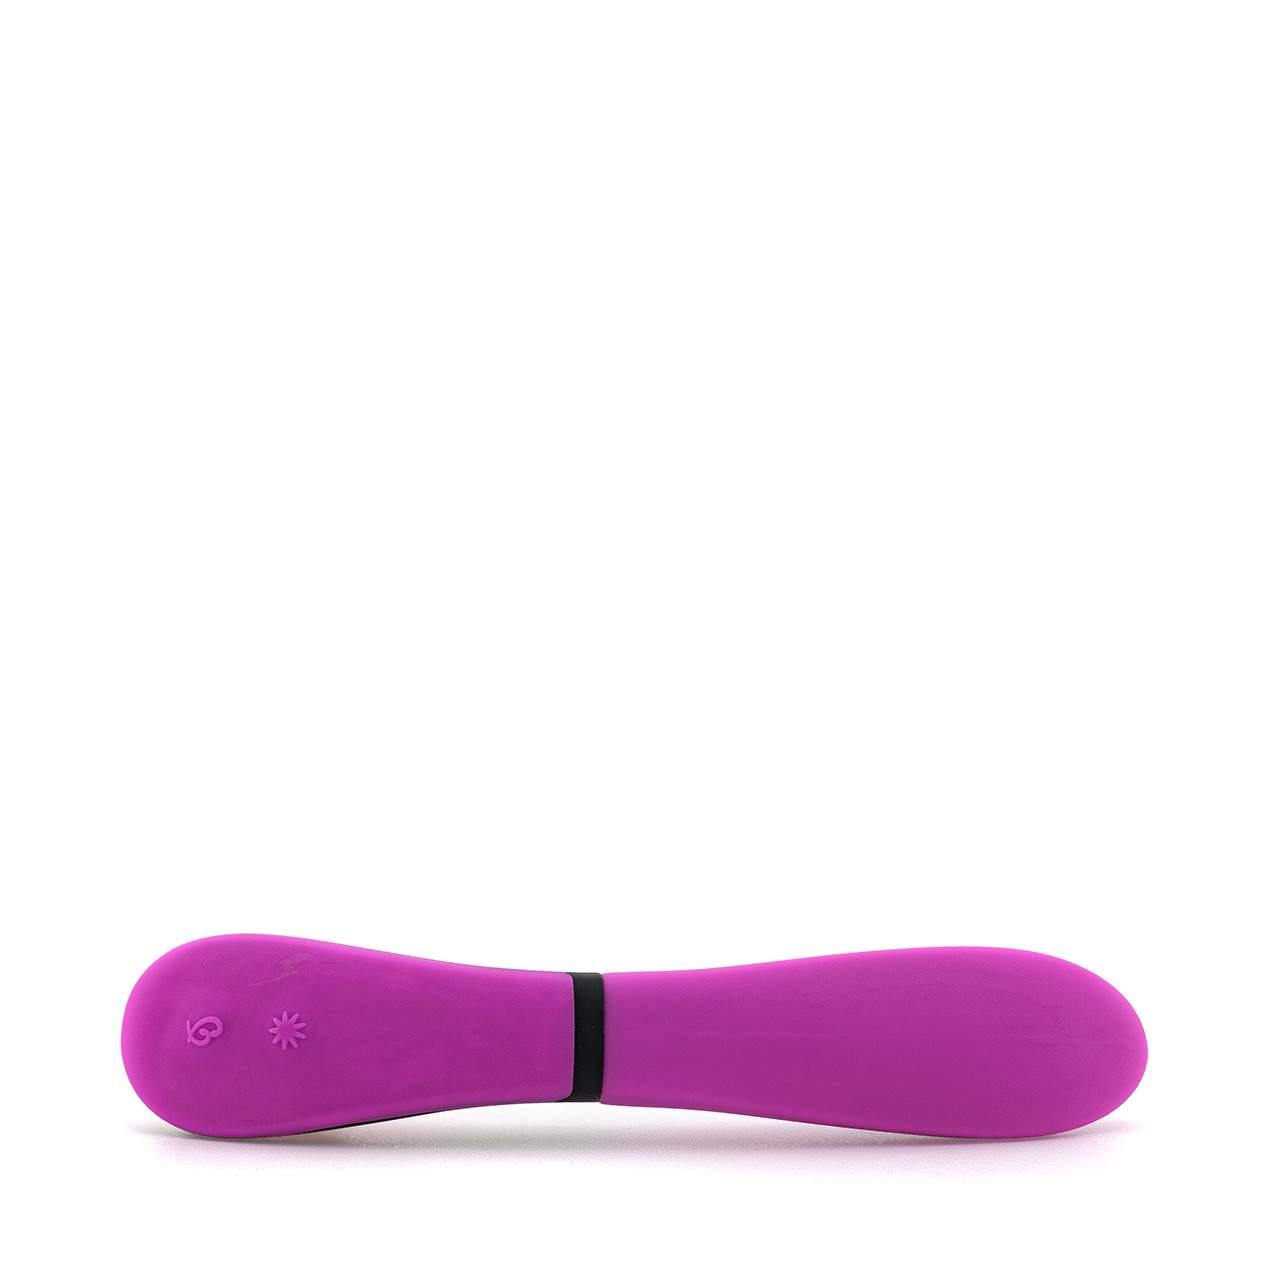 Fioletowy silikonowy wibrator klasyczny do masażu pochwy